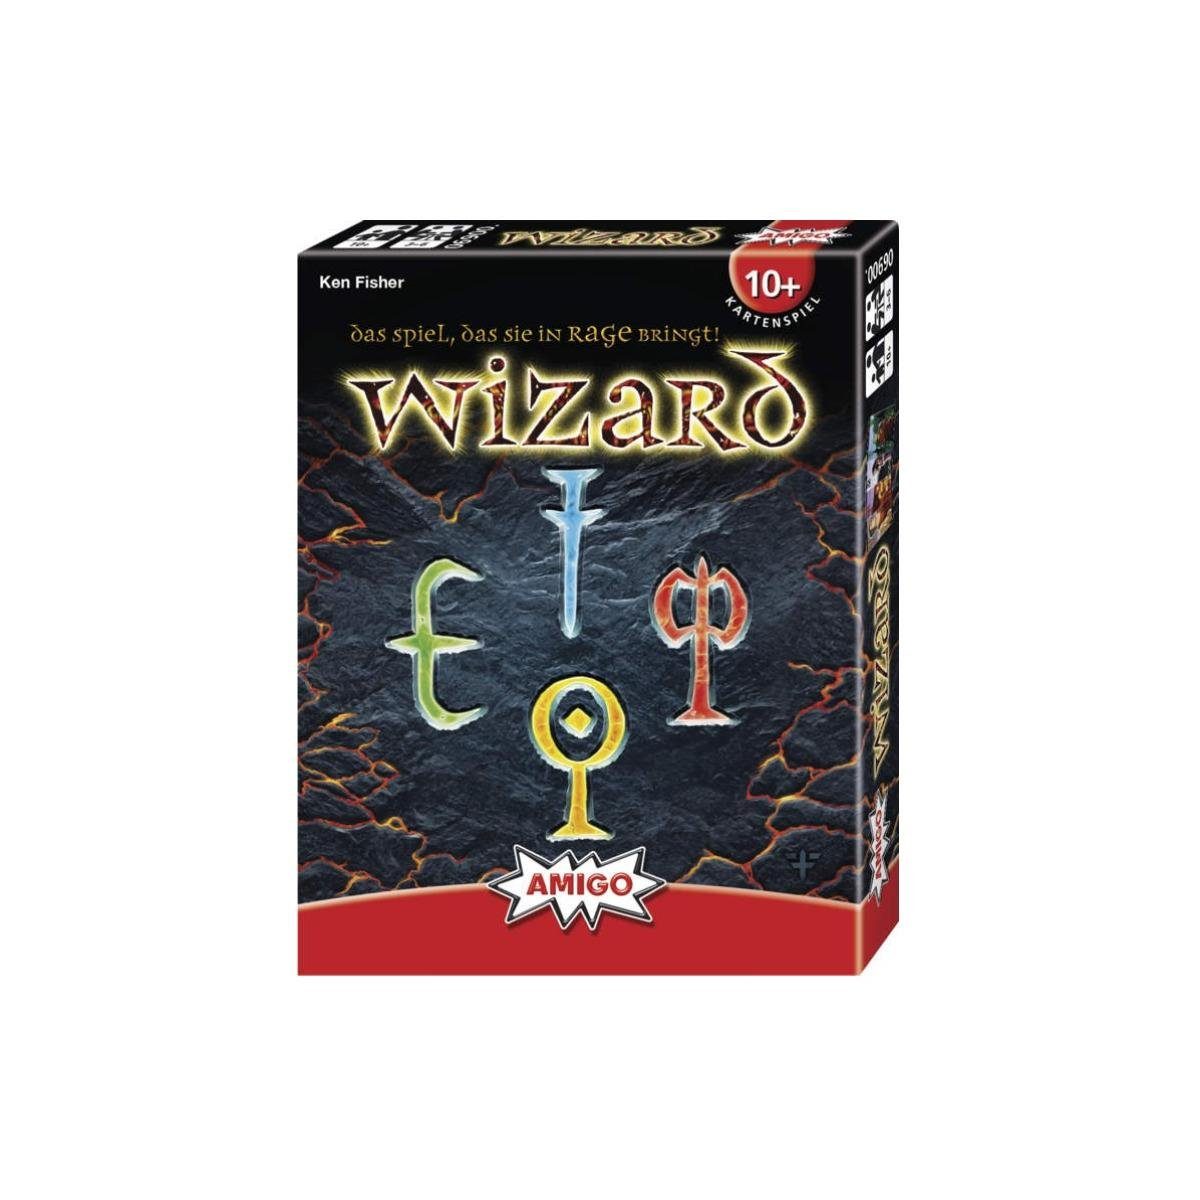 AMIGO Spiel, Familienspiel 6260016 - Wizard, Kartenspiel, für 3-6 Ігриr, ab 10..., Strategiespiel